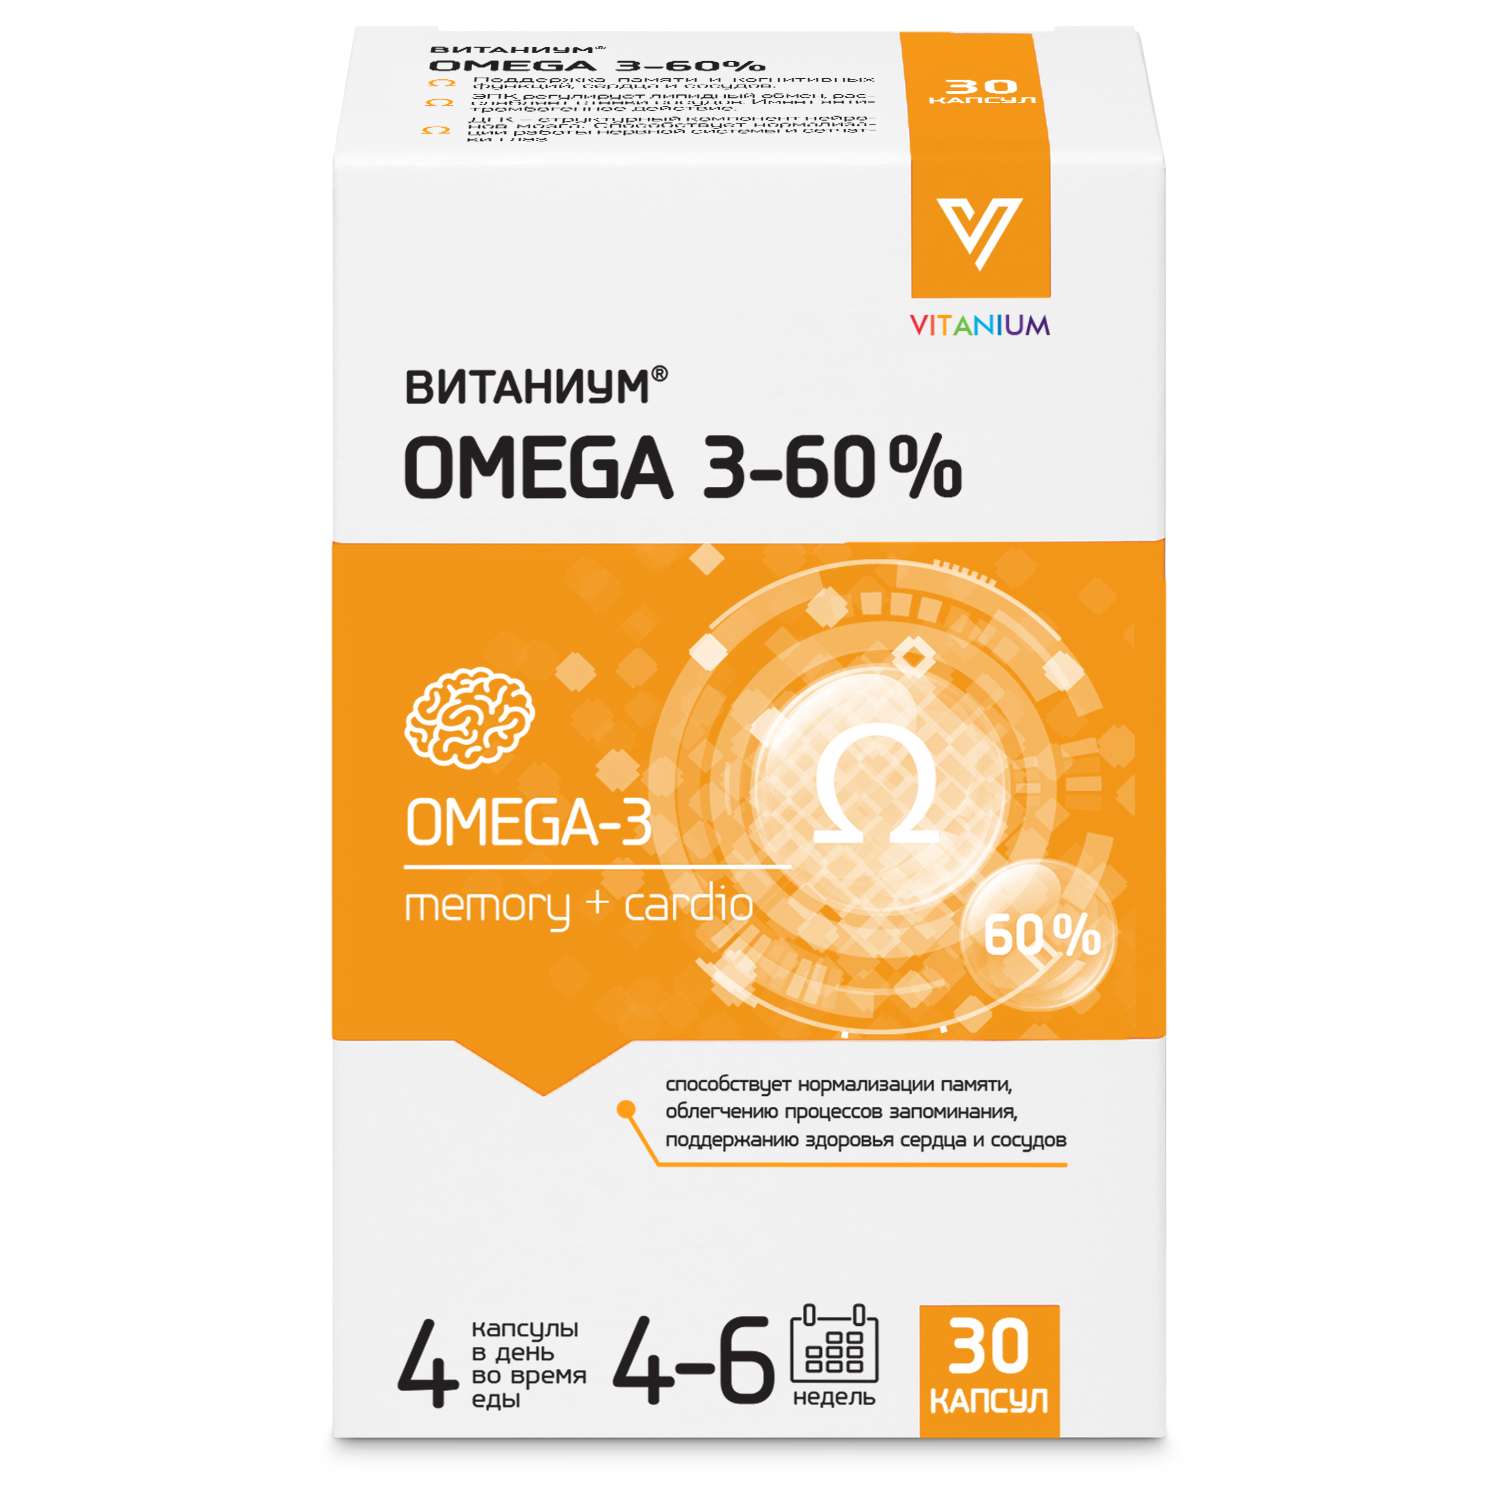 Биологически активная добавка Витаниум Omega 3 60% 30капсул - фото 1